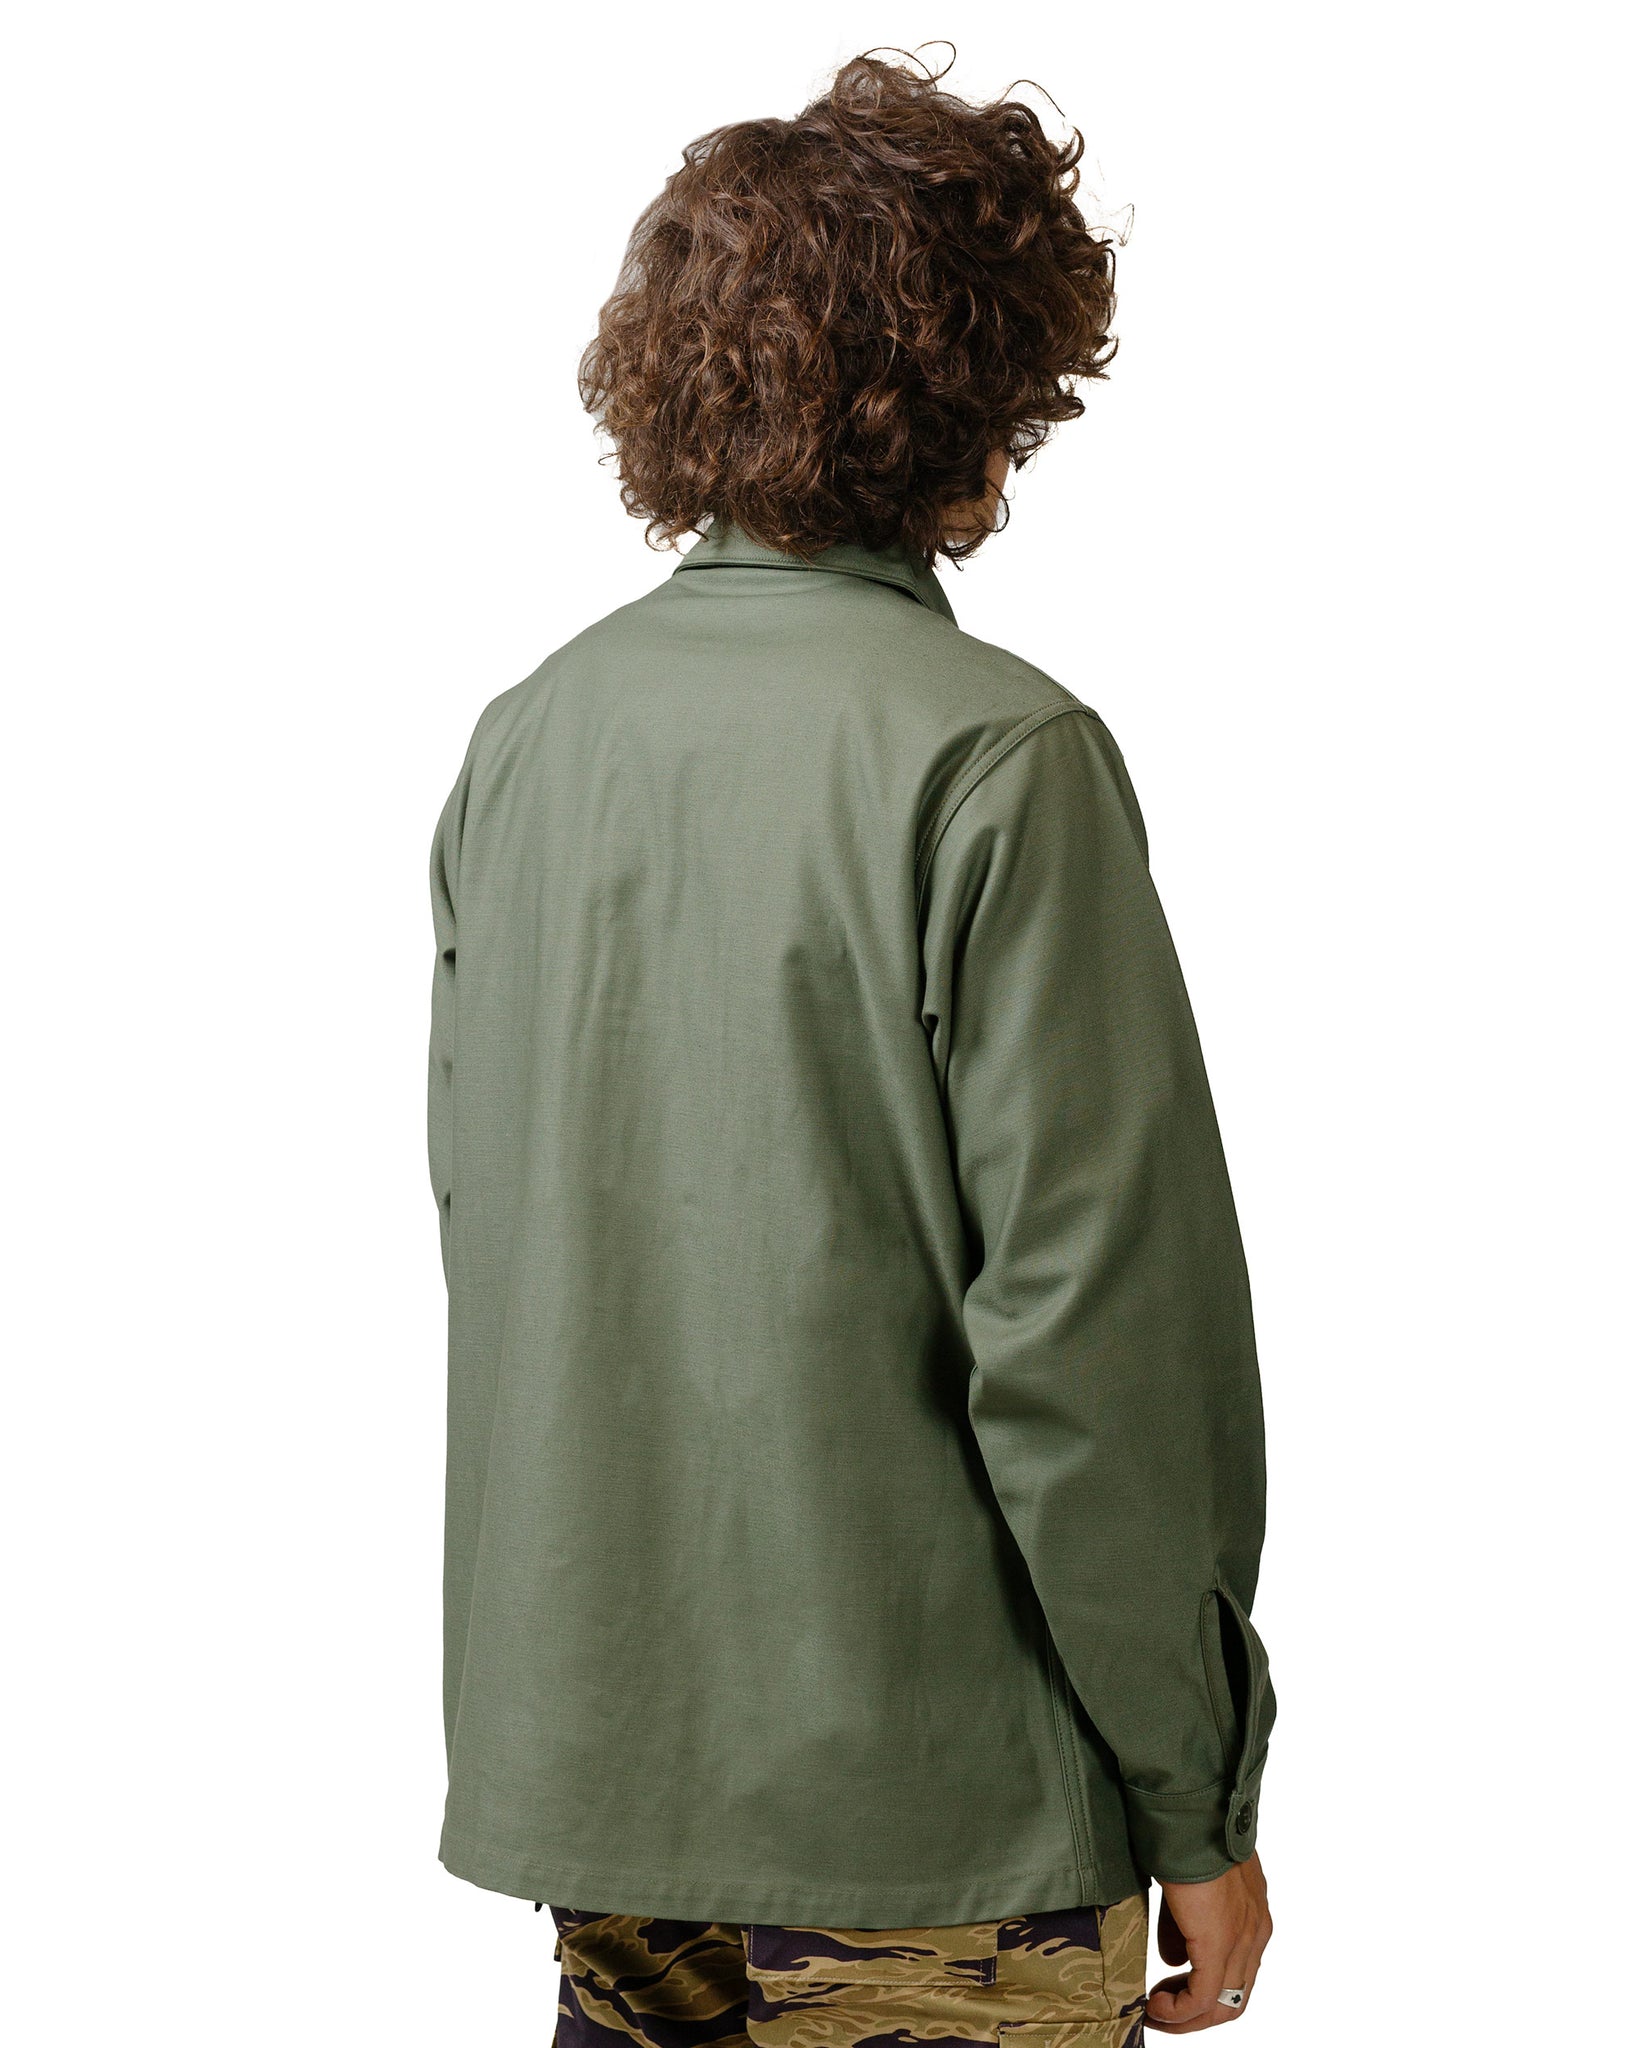 The Real McCoy's MS23101 Shirt, Man's, Cotton Sateen, OG-107 Olive model back